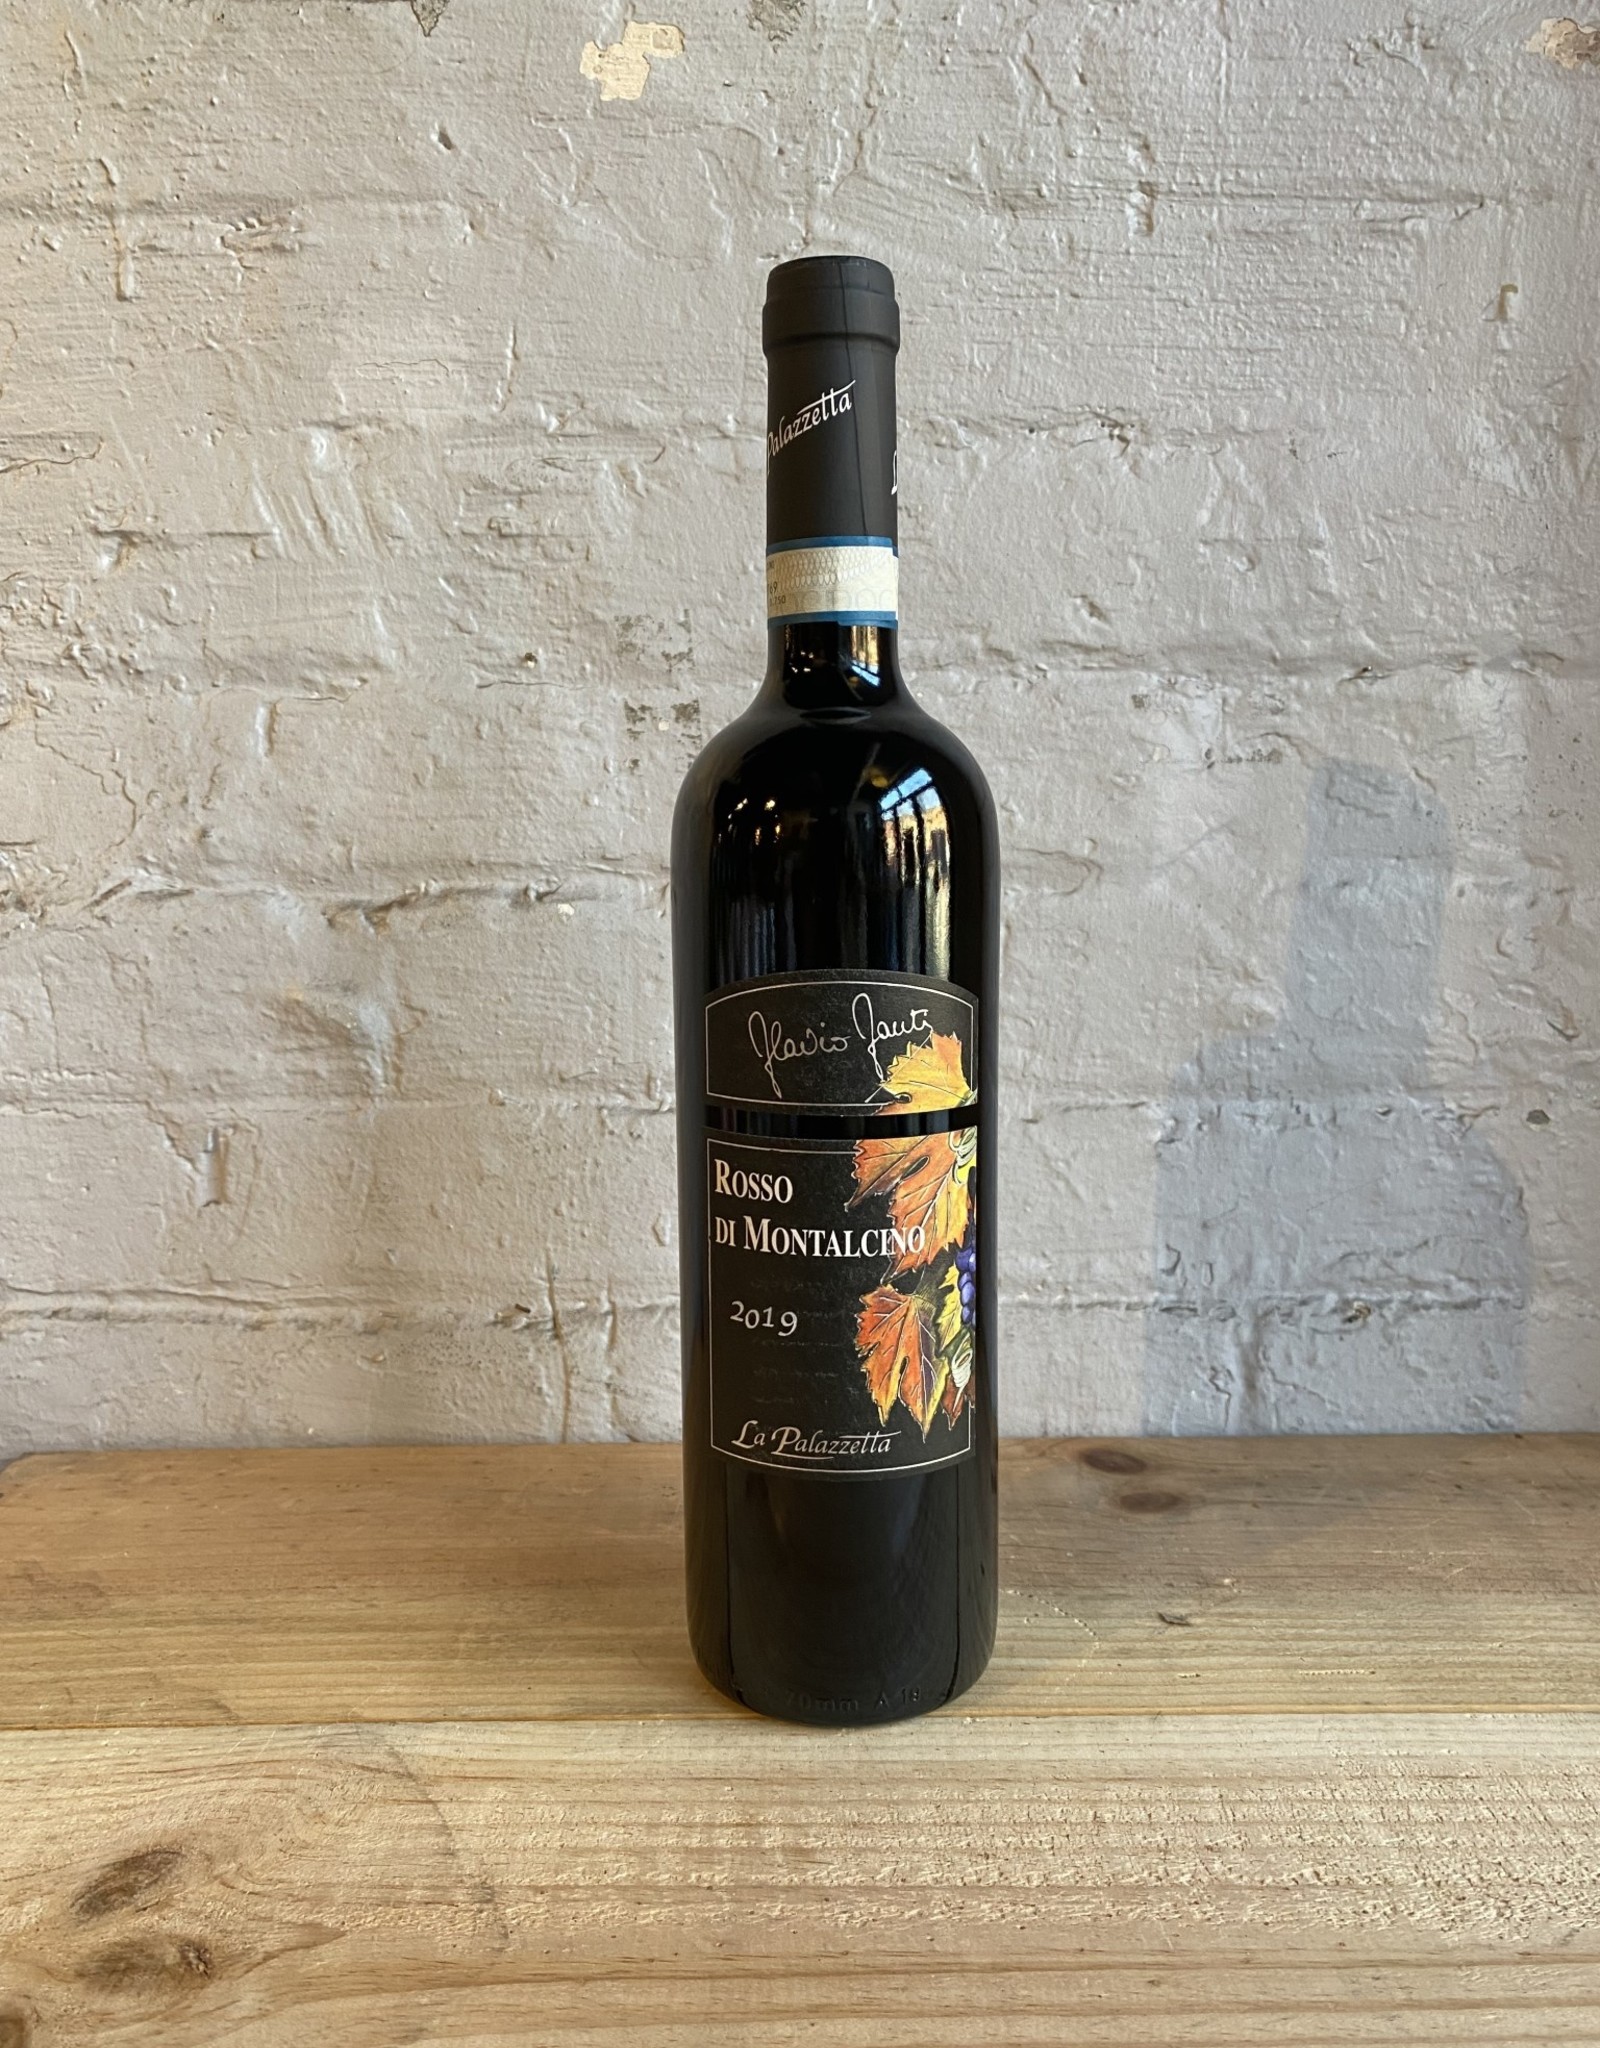 Wine 2019 La Palazzetta Rosso di Montalcino - Tucany, Italy (750ml)